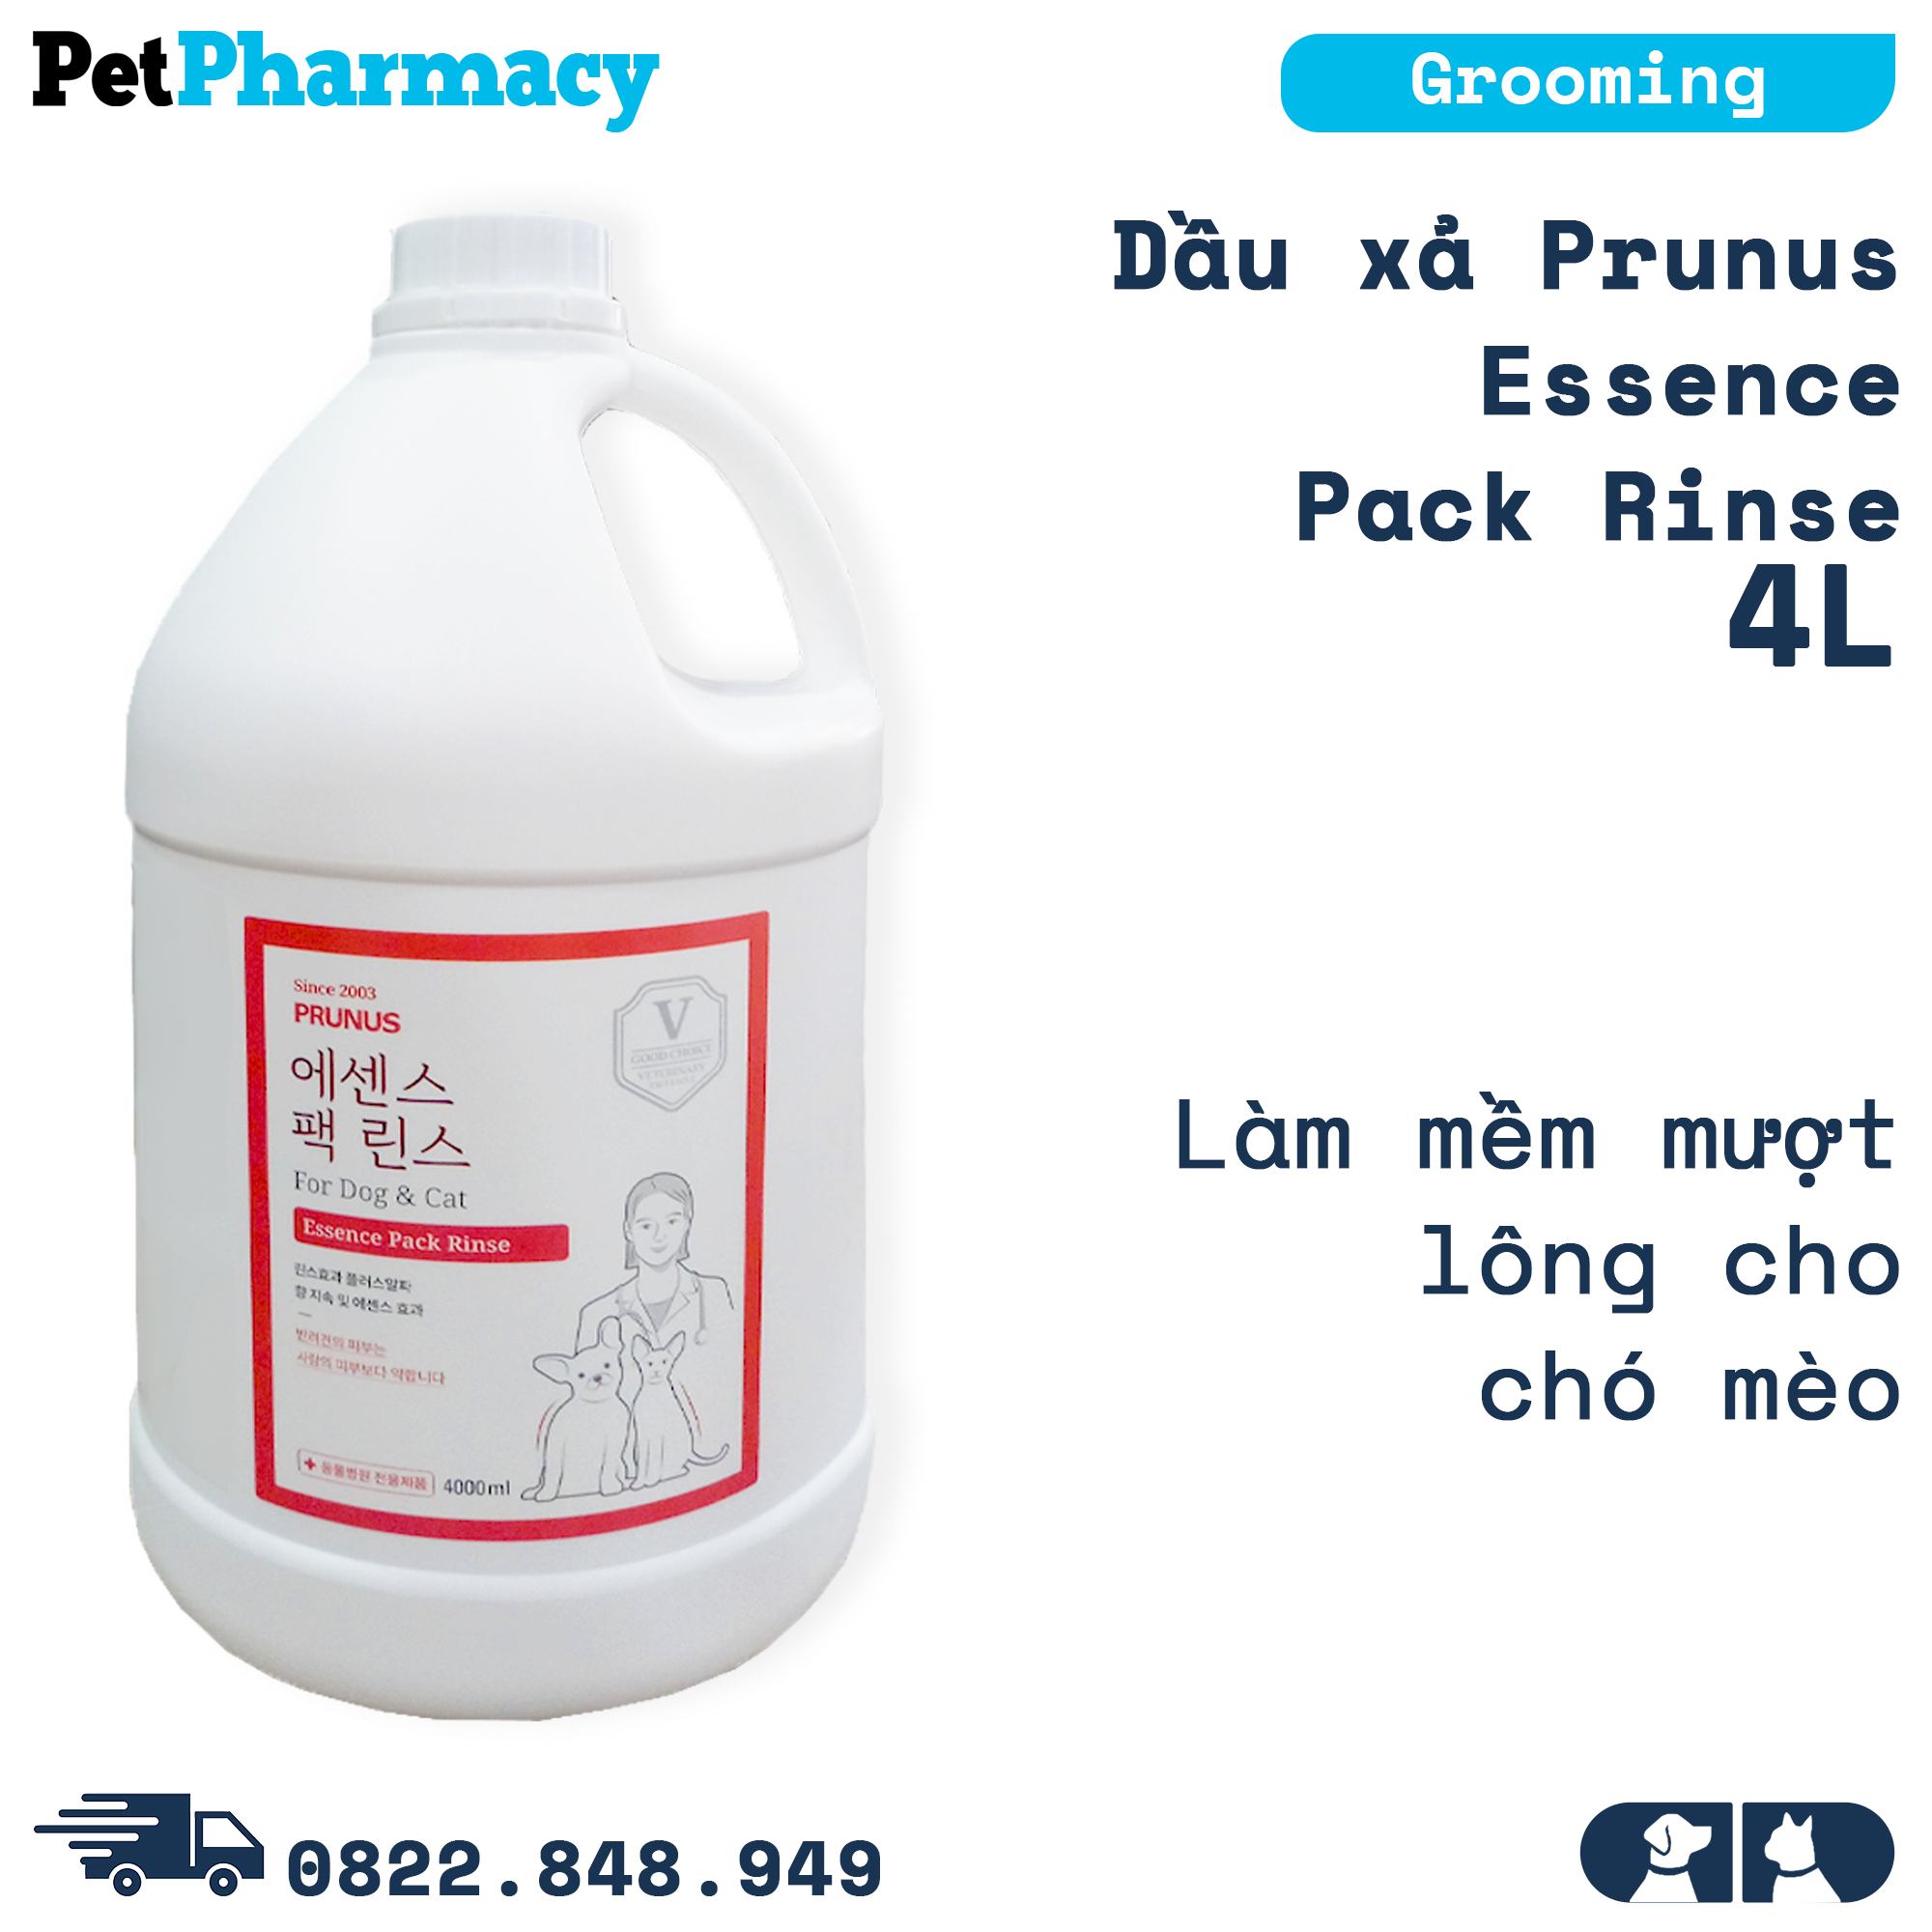  Dầu xả Prunus Essence Pack Rinse 4L  - Làm mềm mượt lông cho chó mèo PetPharmacy 